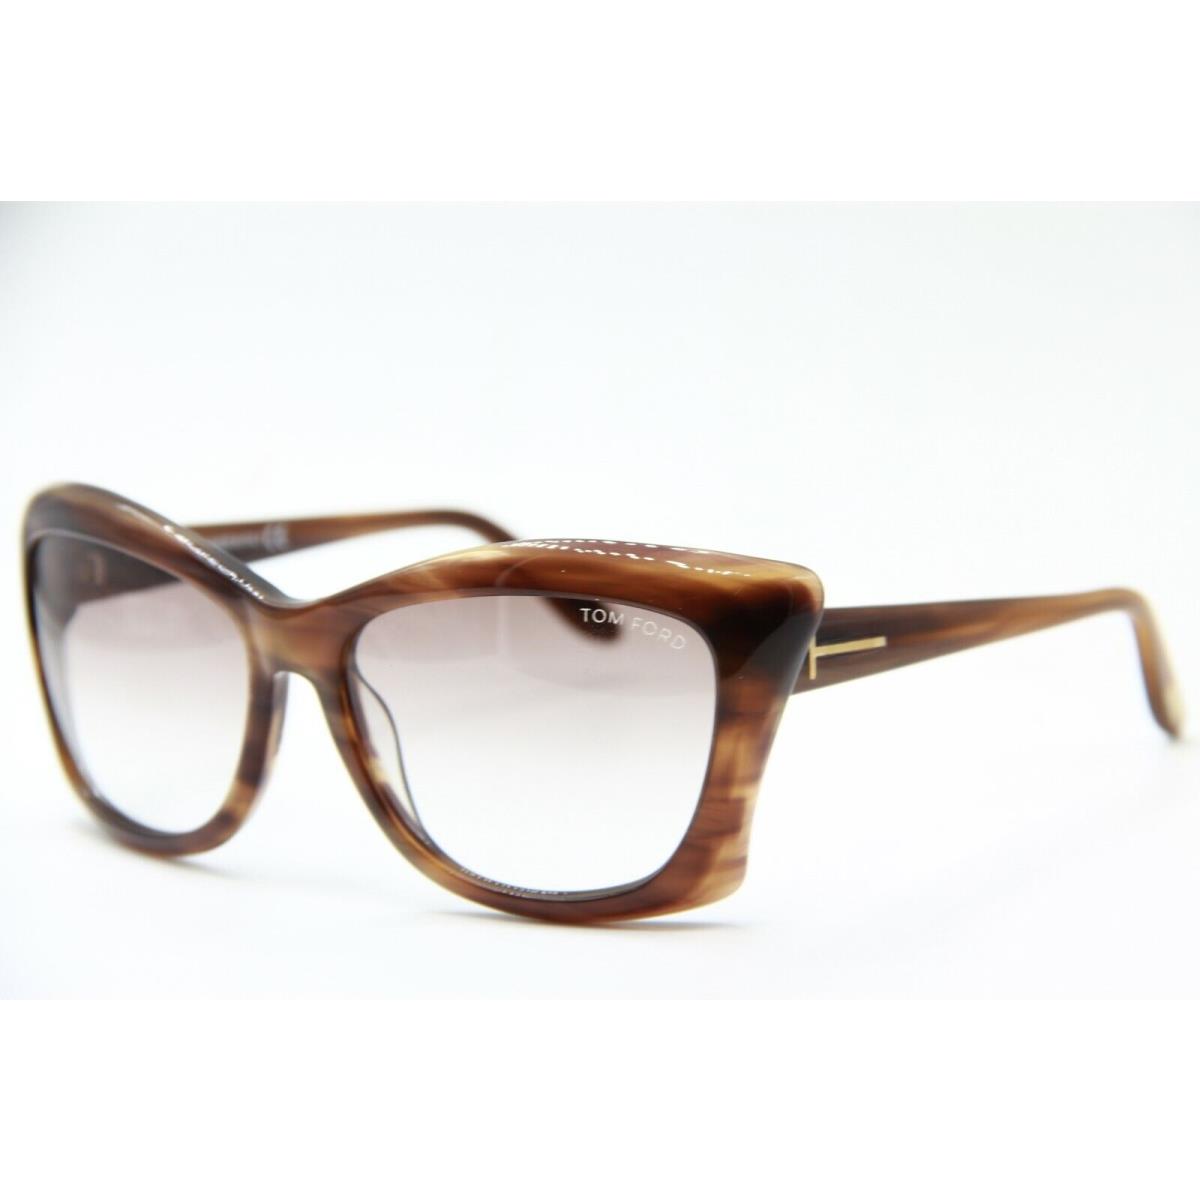 Tom Ford sunglasses  - Frame: BROWN TORTOISE, Lens: BROWN 3